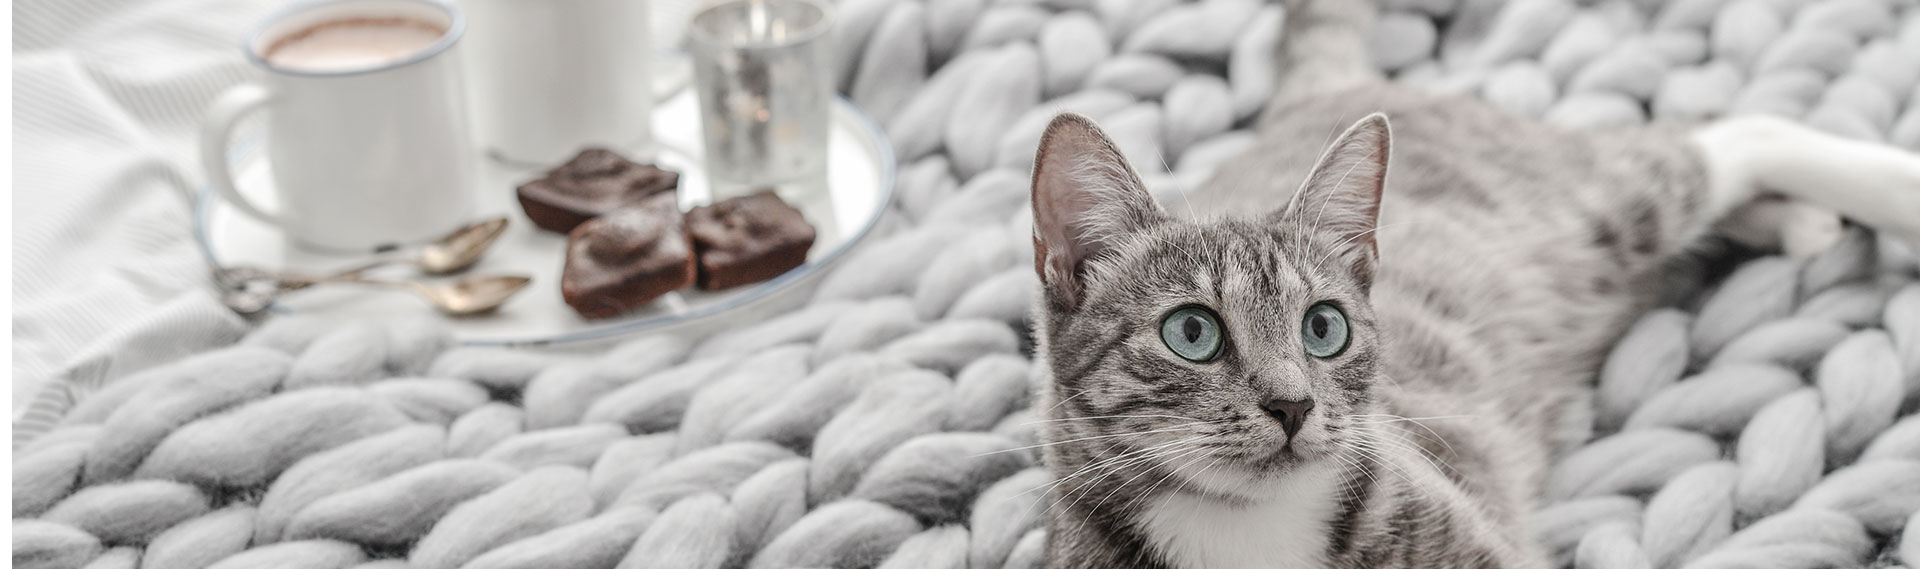 Image reposante d'une tasse à café et des gâteaux dans un plateau posé sur un plaid à grosses mailles grises où est allongé un chat